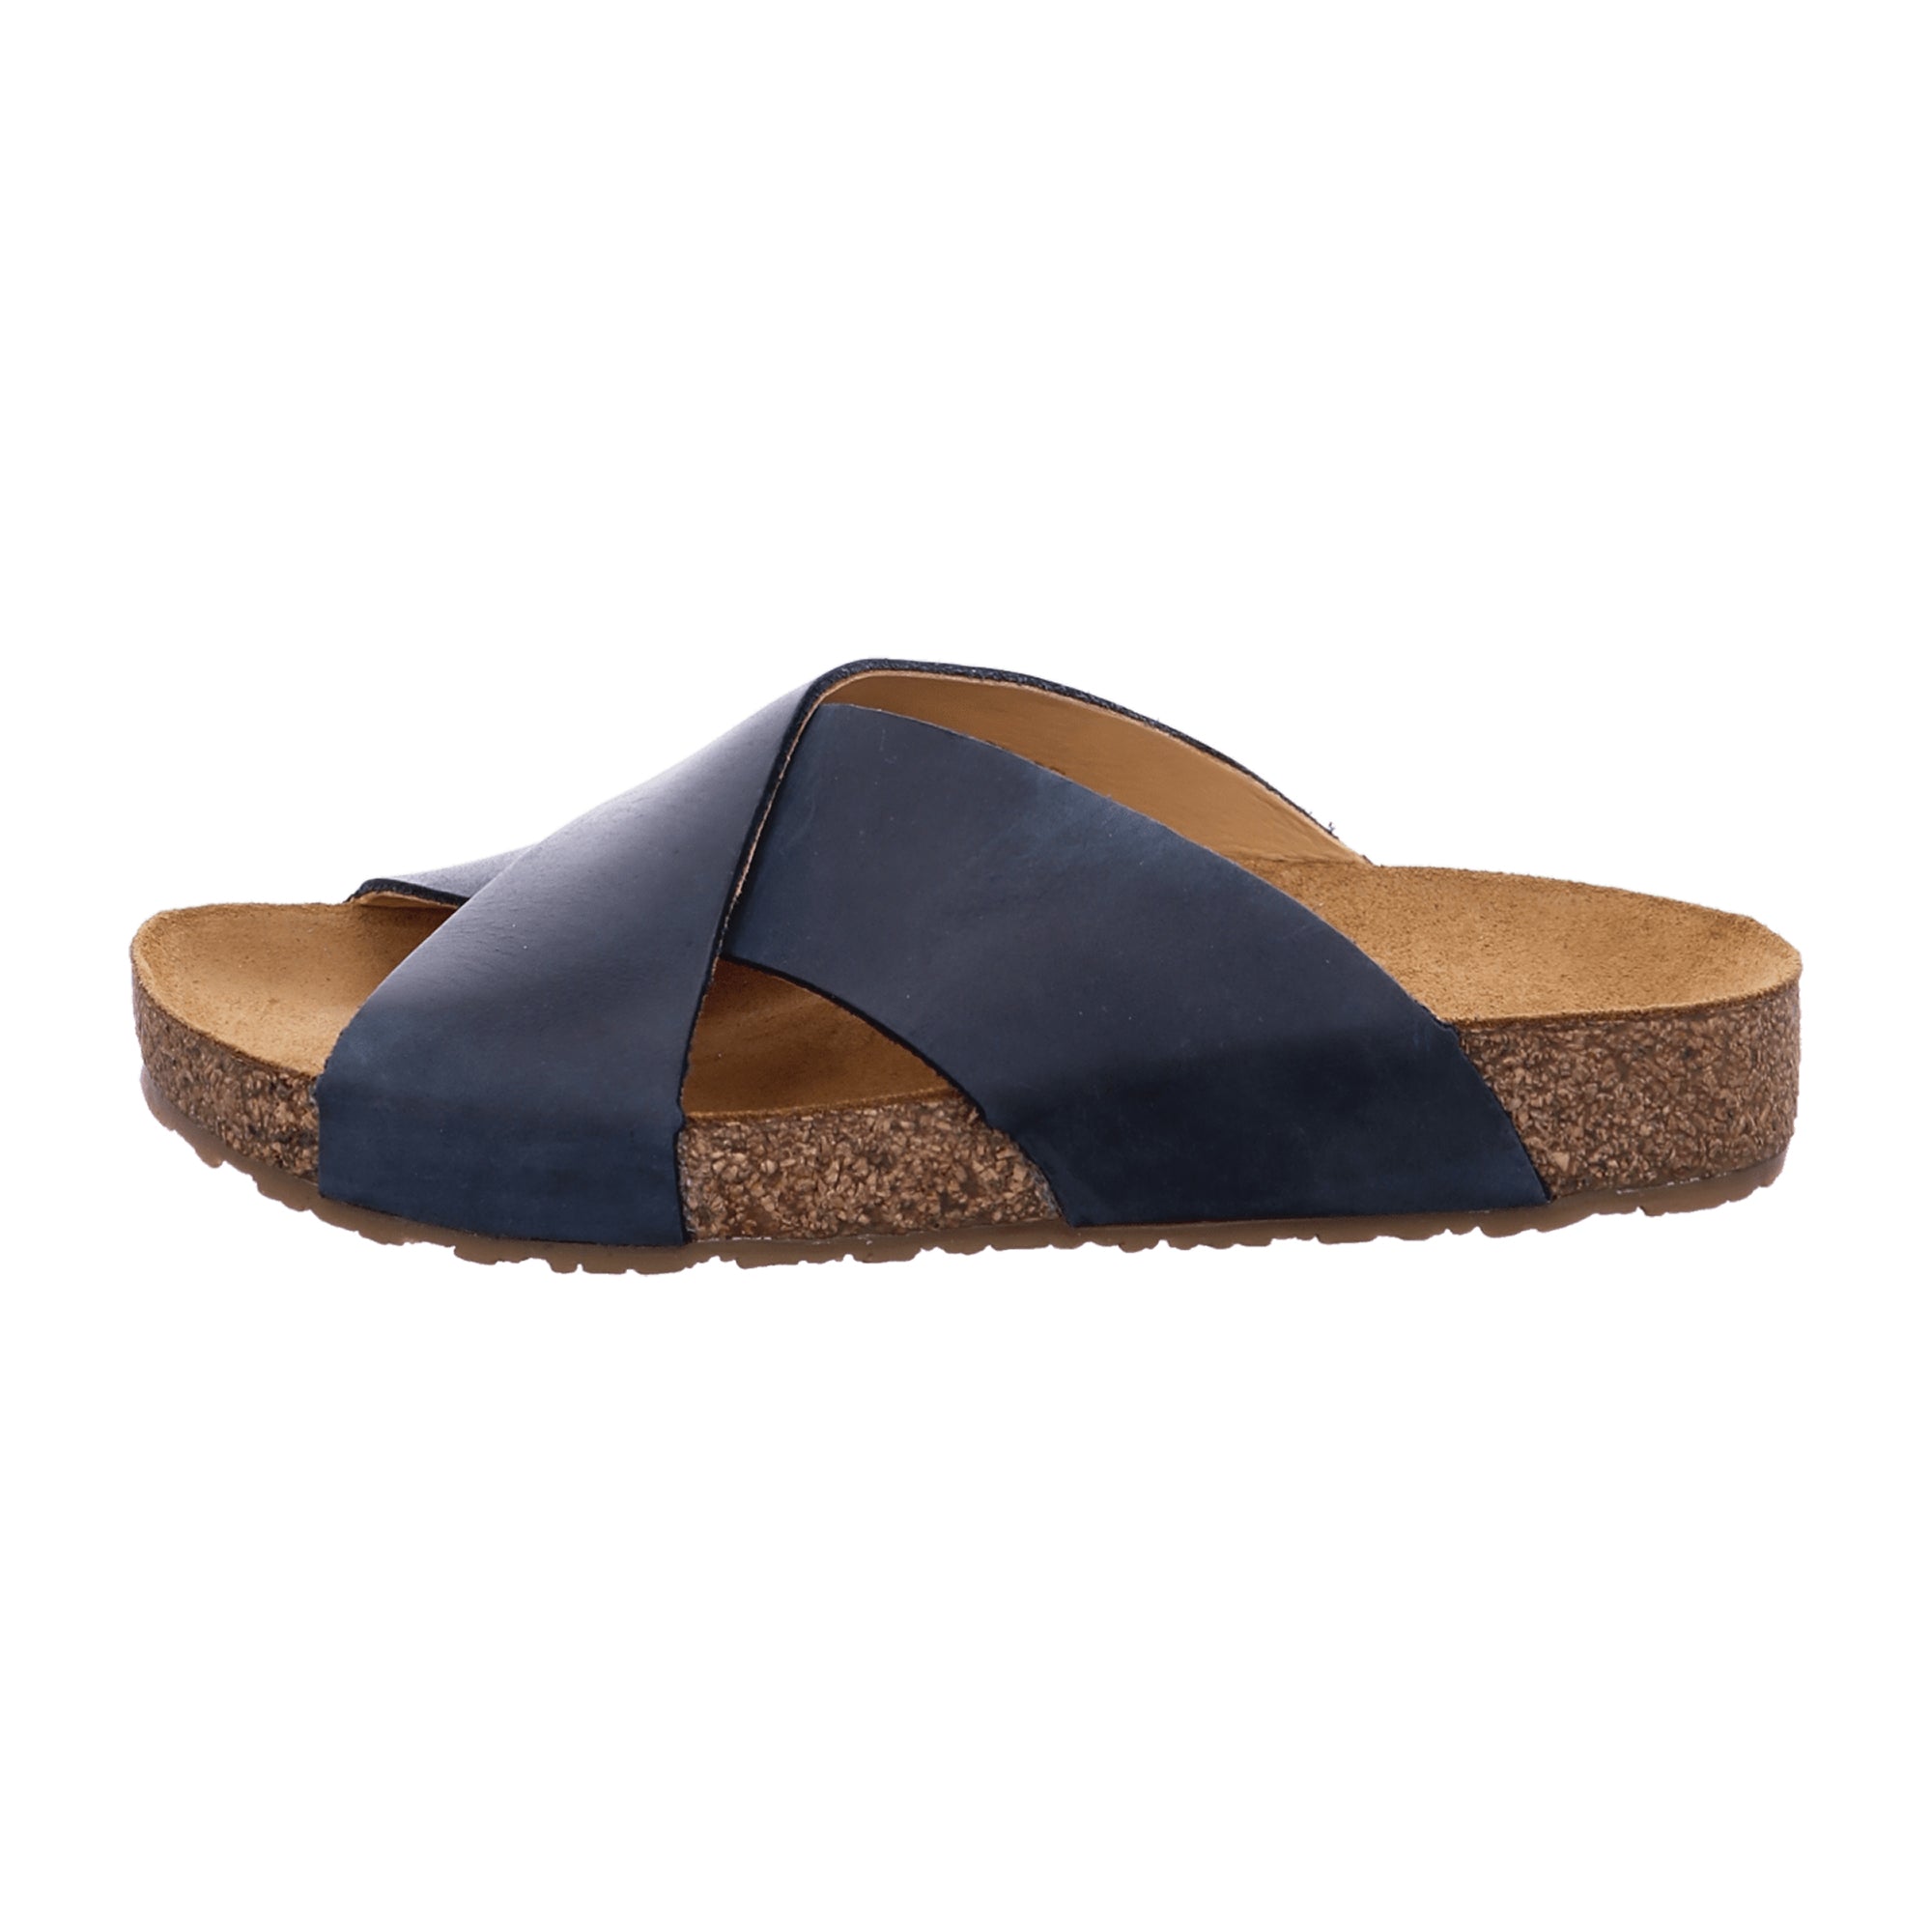 Haflinger Bio Mio Women's Sandals – Sustainable & Stylish Blue Leather